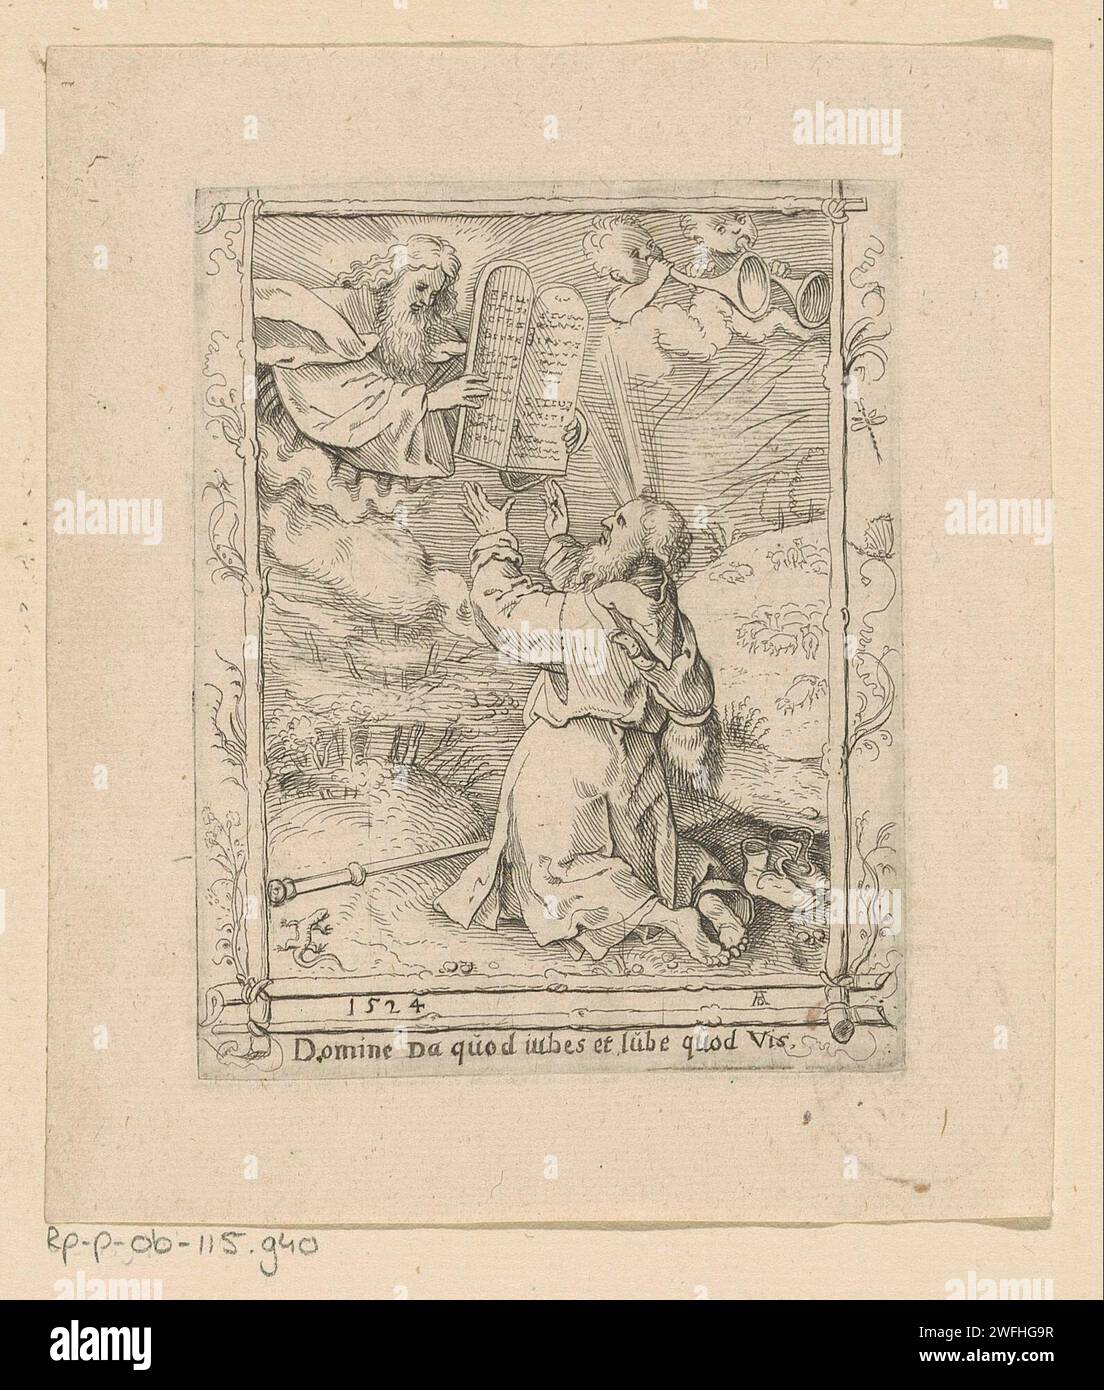 Moïse reçoit les dix Commandements, Anonyme, Albrecht Dürer (attribution rejetée), 1524 impression cadre décoratif de bâtons et de motifs végétaux. Avec légende en latin. Gravure de papier Moïse reçoit les tables de la loi de Dieu. animaux fabuleux  lézards. chaussures, sandales Banque D'Images